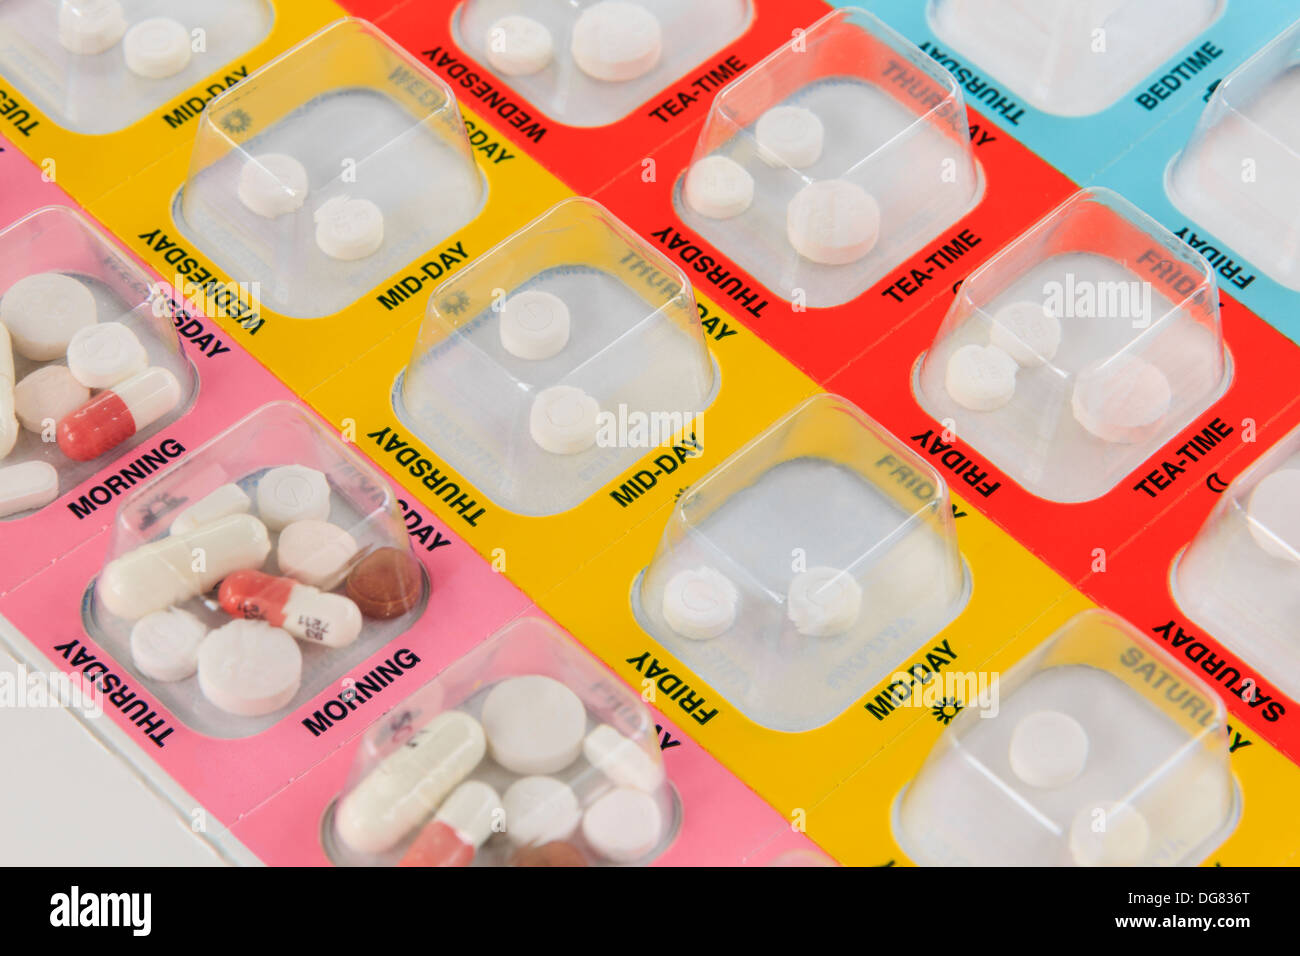 Medicina Manager colori blister pack con sette giorni di medicazione pillole quattro volte al giorno ogni giorno. Inghilterra, Regno Unito Foto Stock